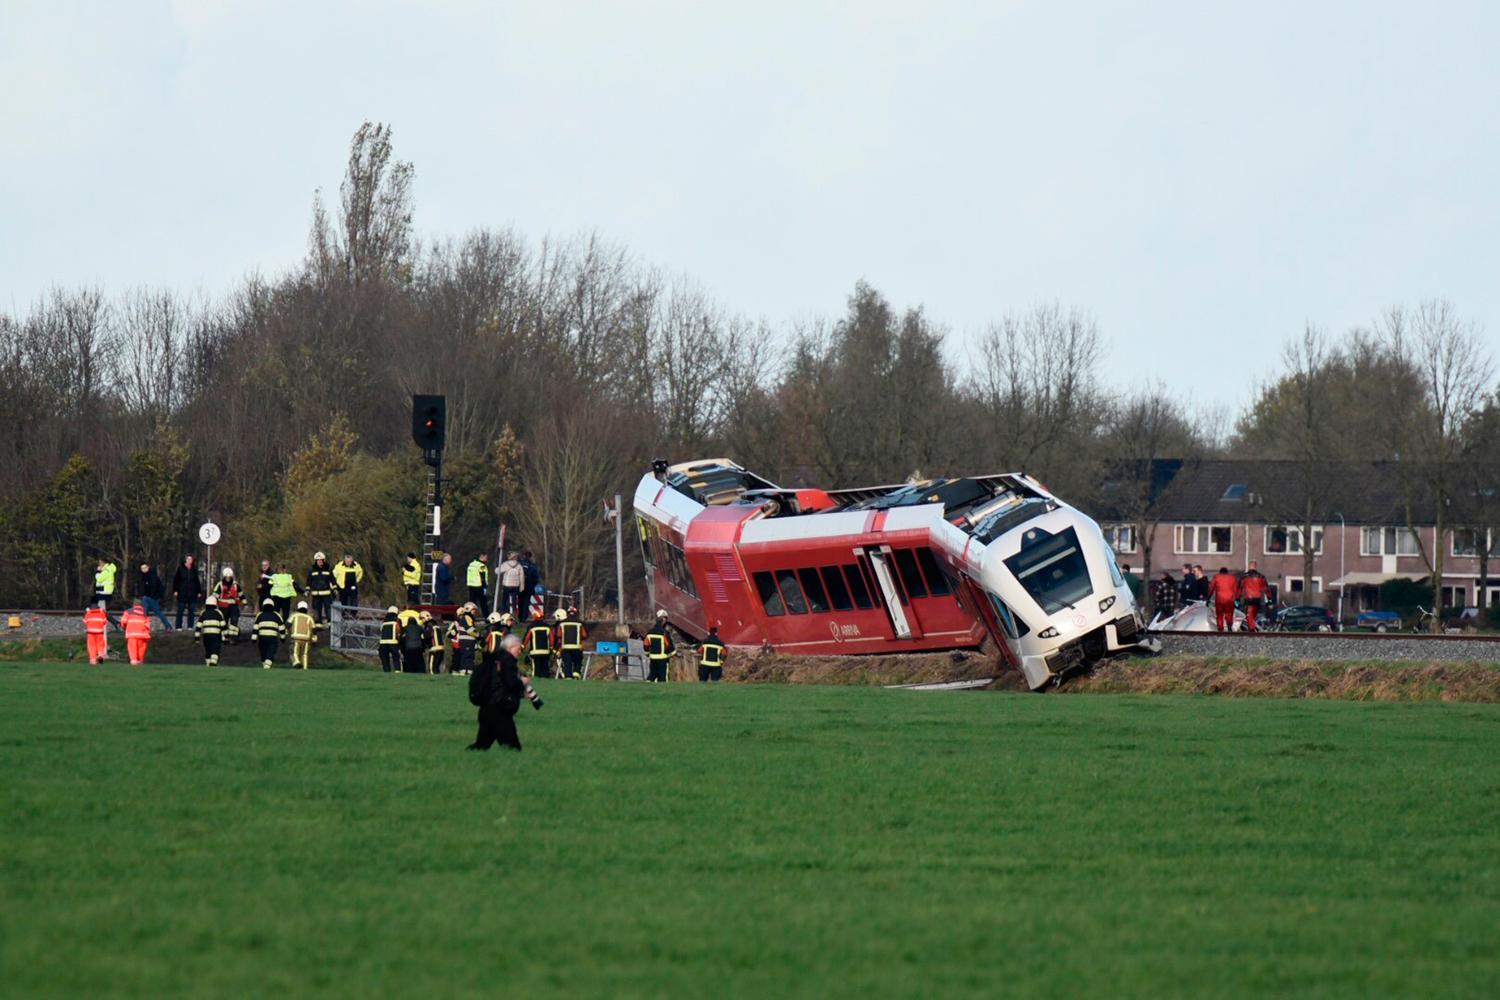 Olyckan inträffade mellan Sauwerd och Warffum, 20 mil norr om Amsterdam.